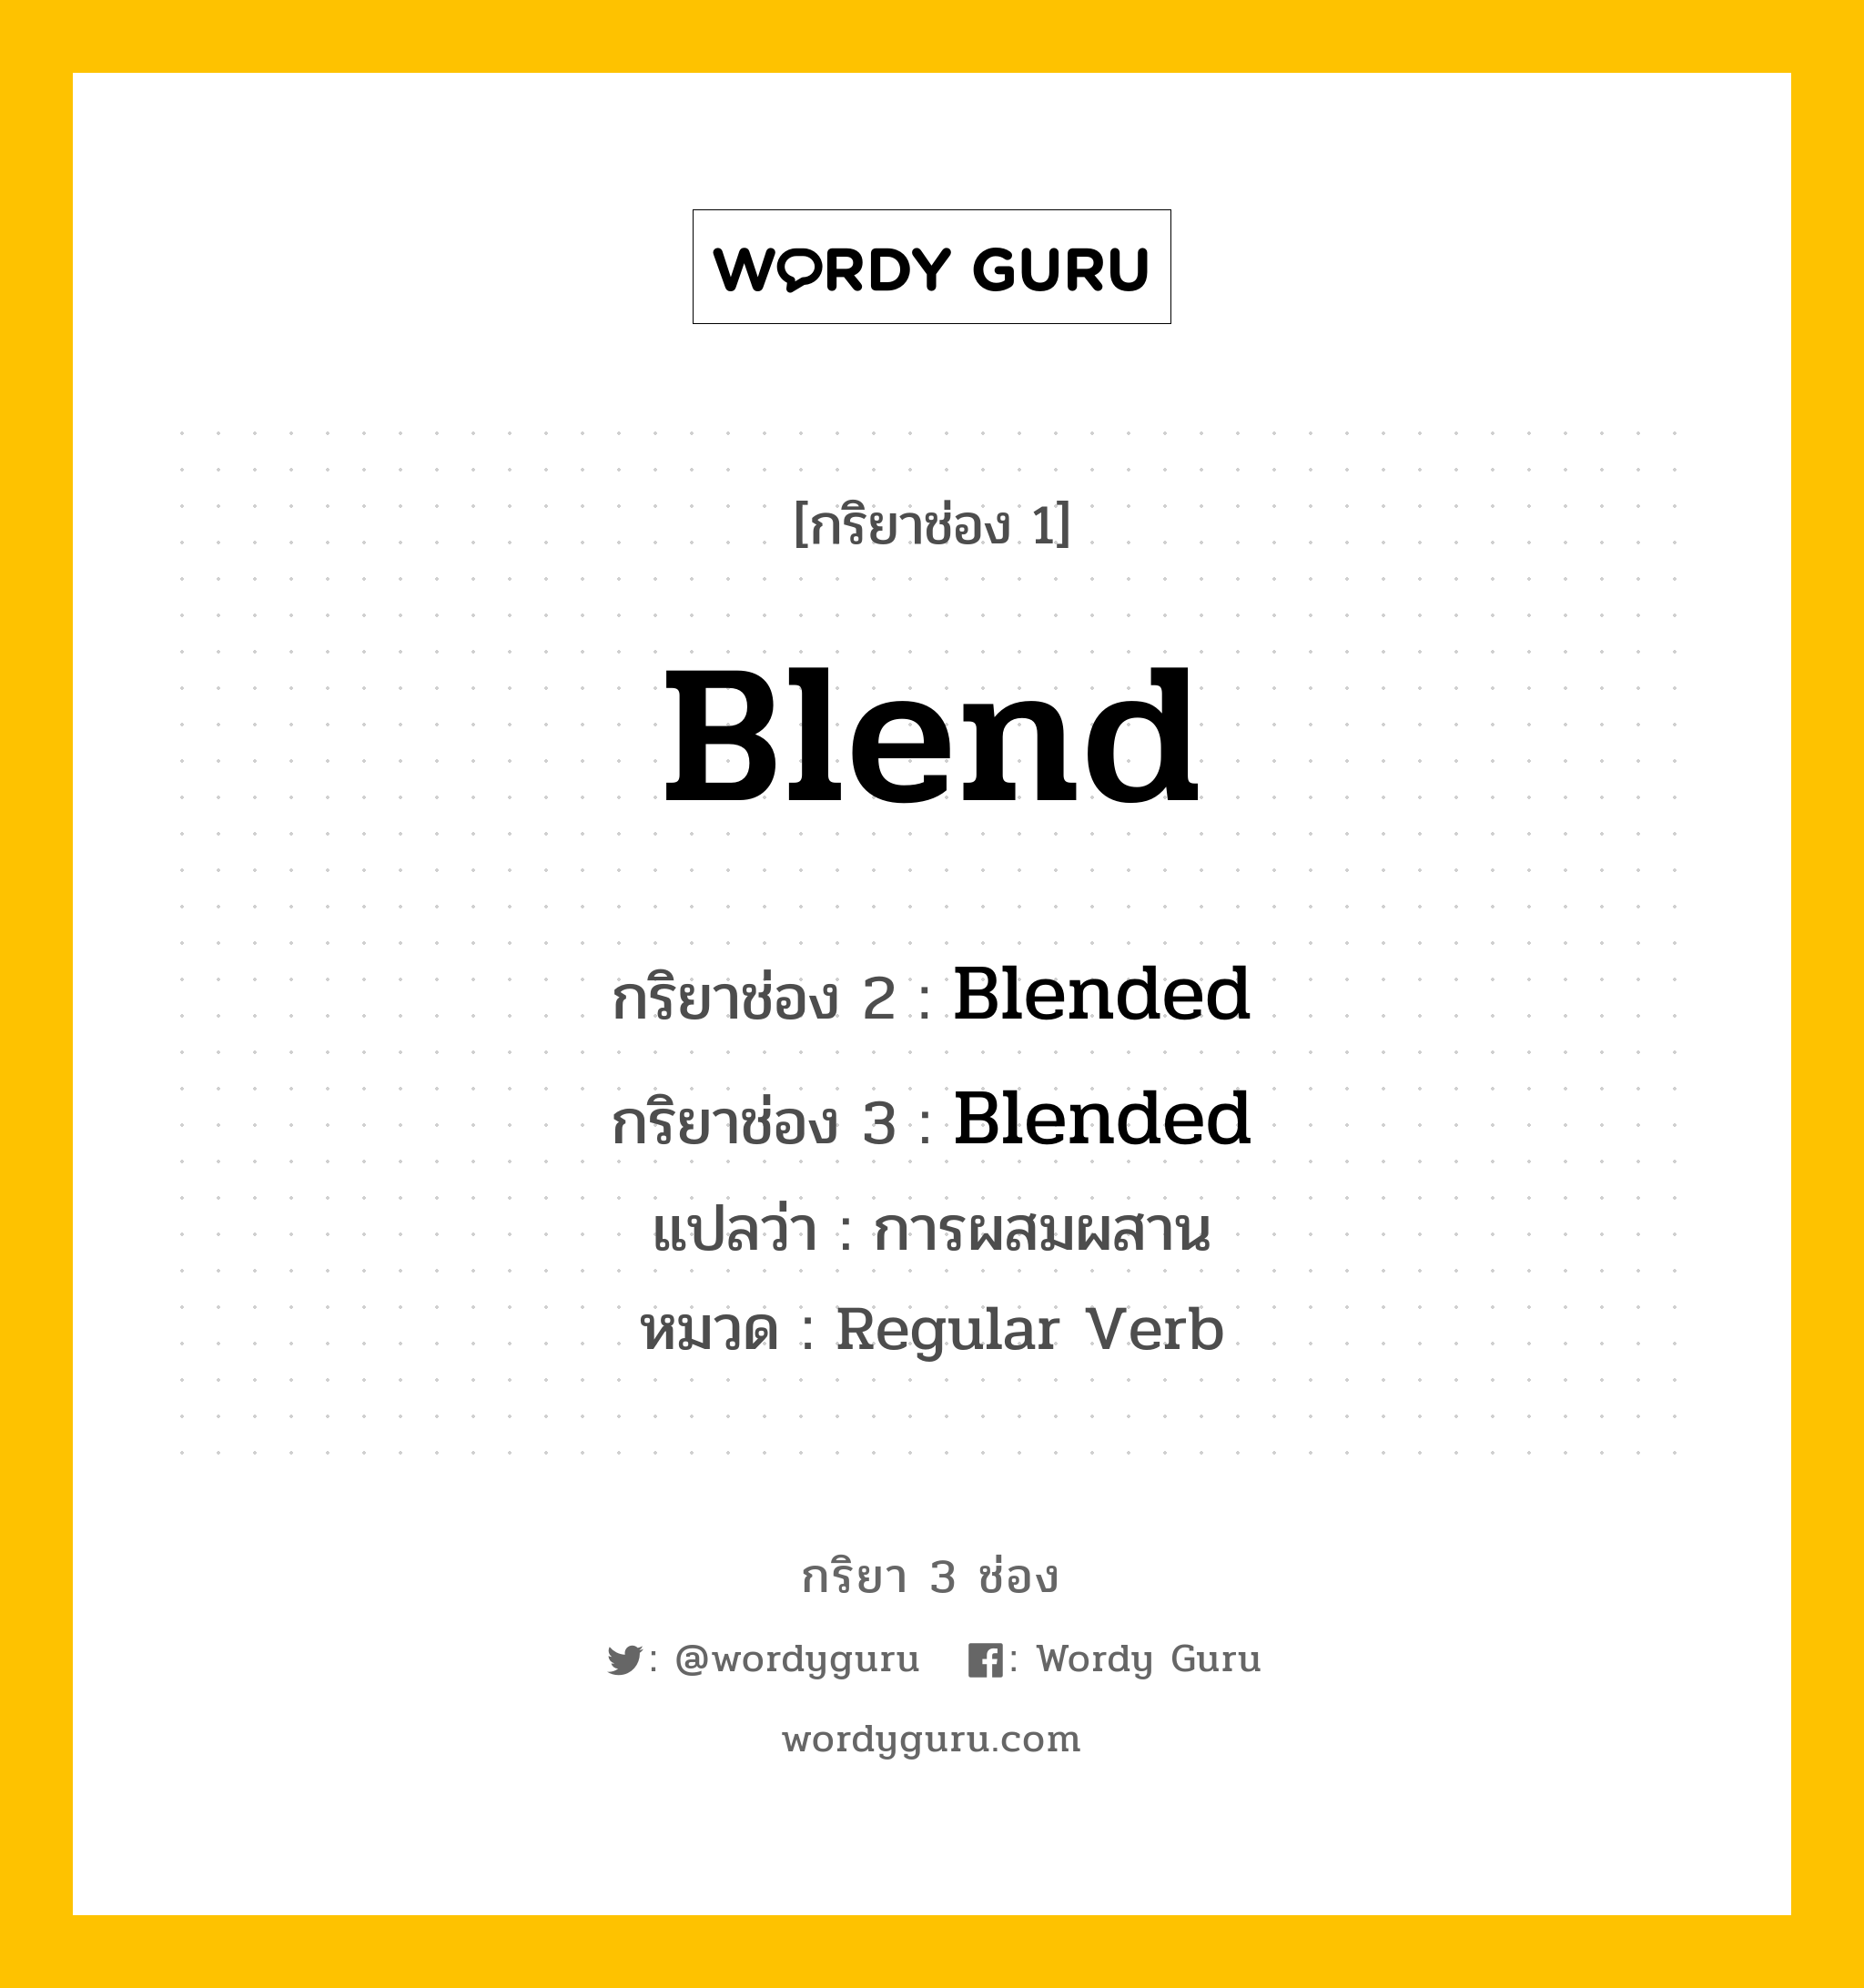 กริยา 3 ช่อง: Blend ช่อง 2 Blend ช่อง 3 คืออะไร, กริยาช่อง 1 Blend กริยาช่อง 2 Blended กริยาช่อง 3 Blended แปลว่า การผสมผสาน หมวด Regular Verb หมวด Regular Verb